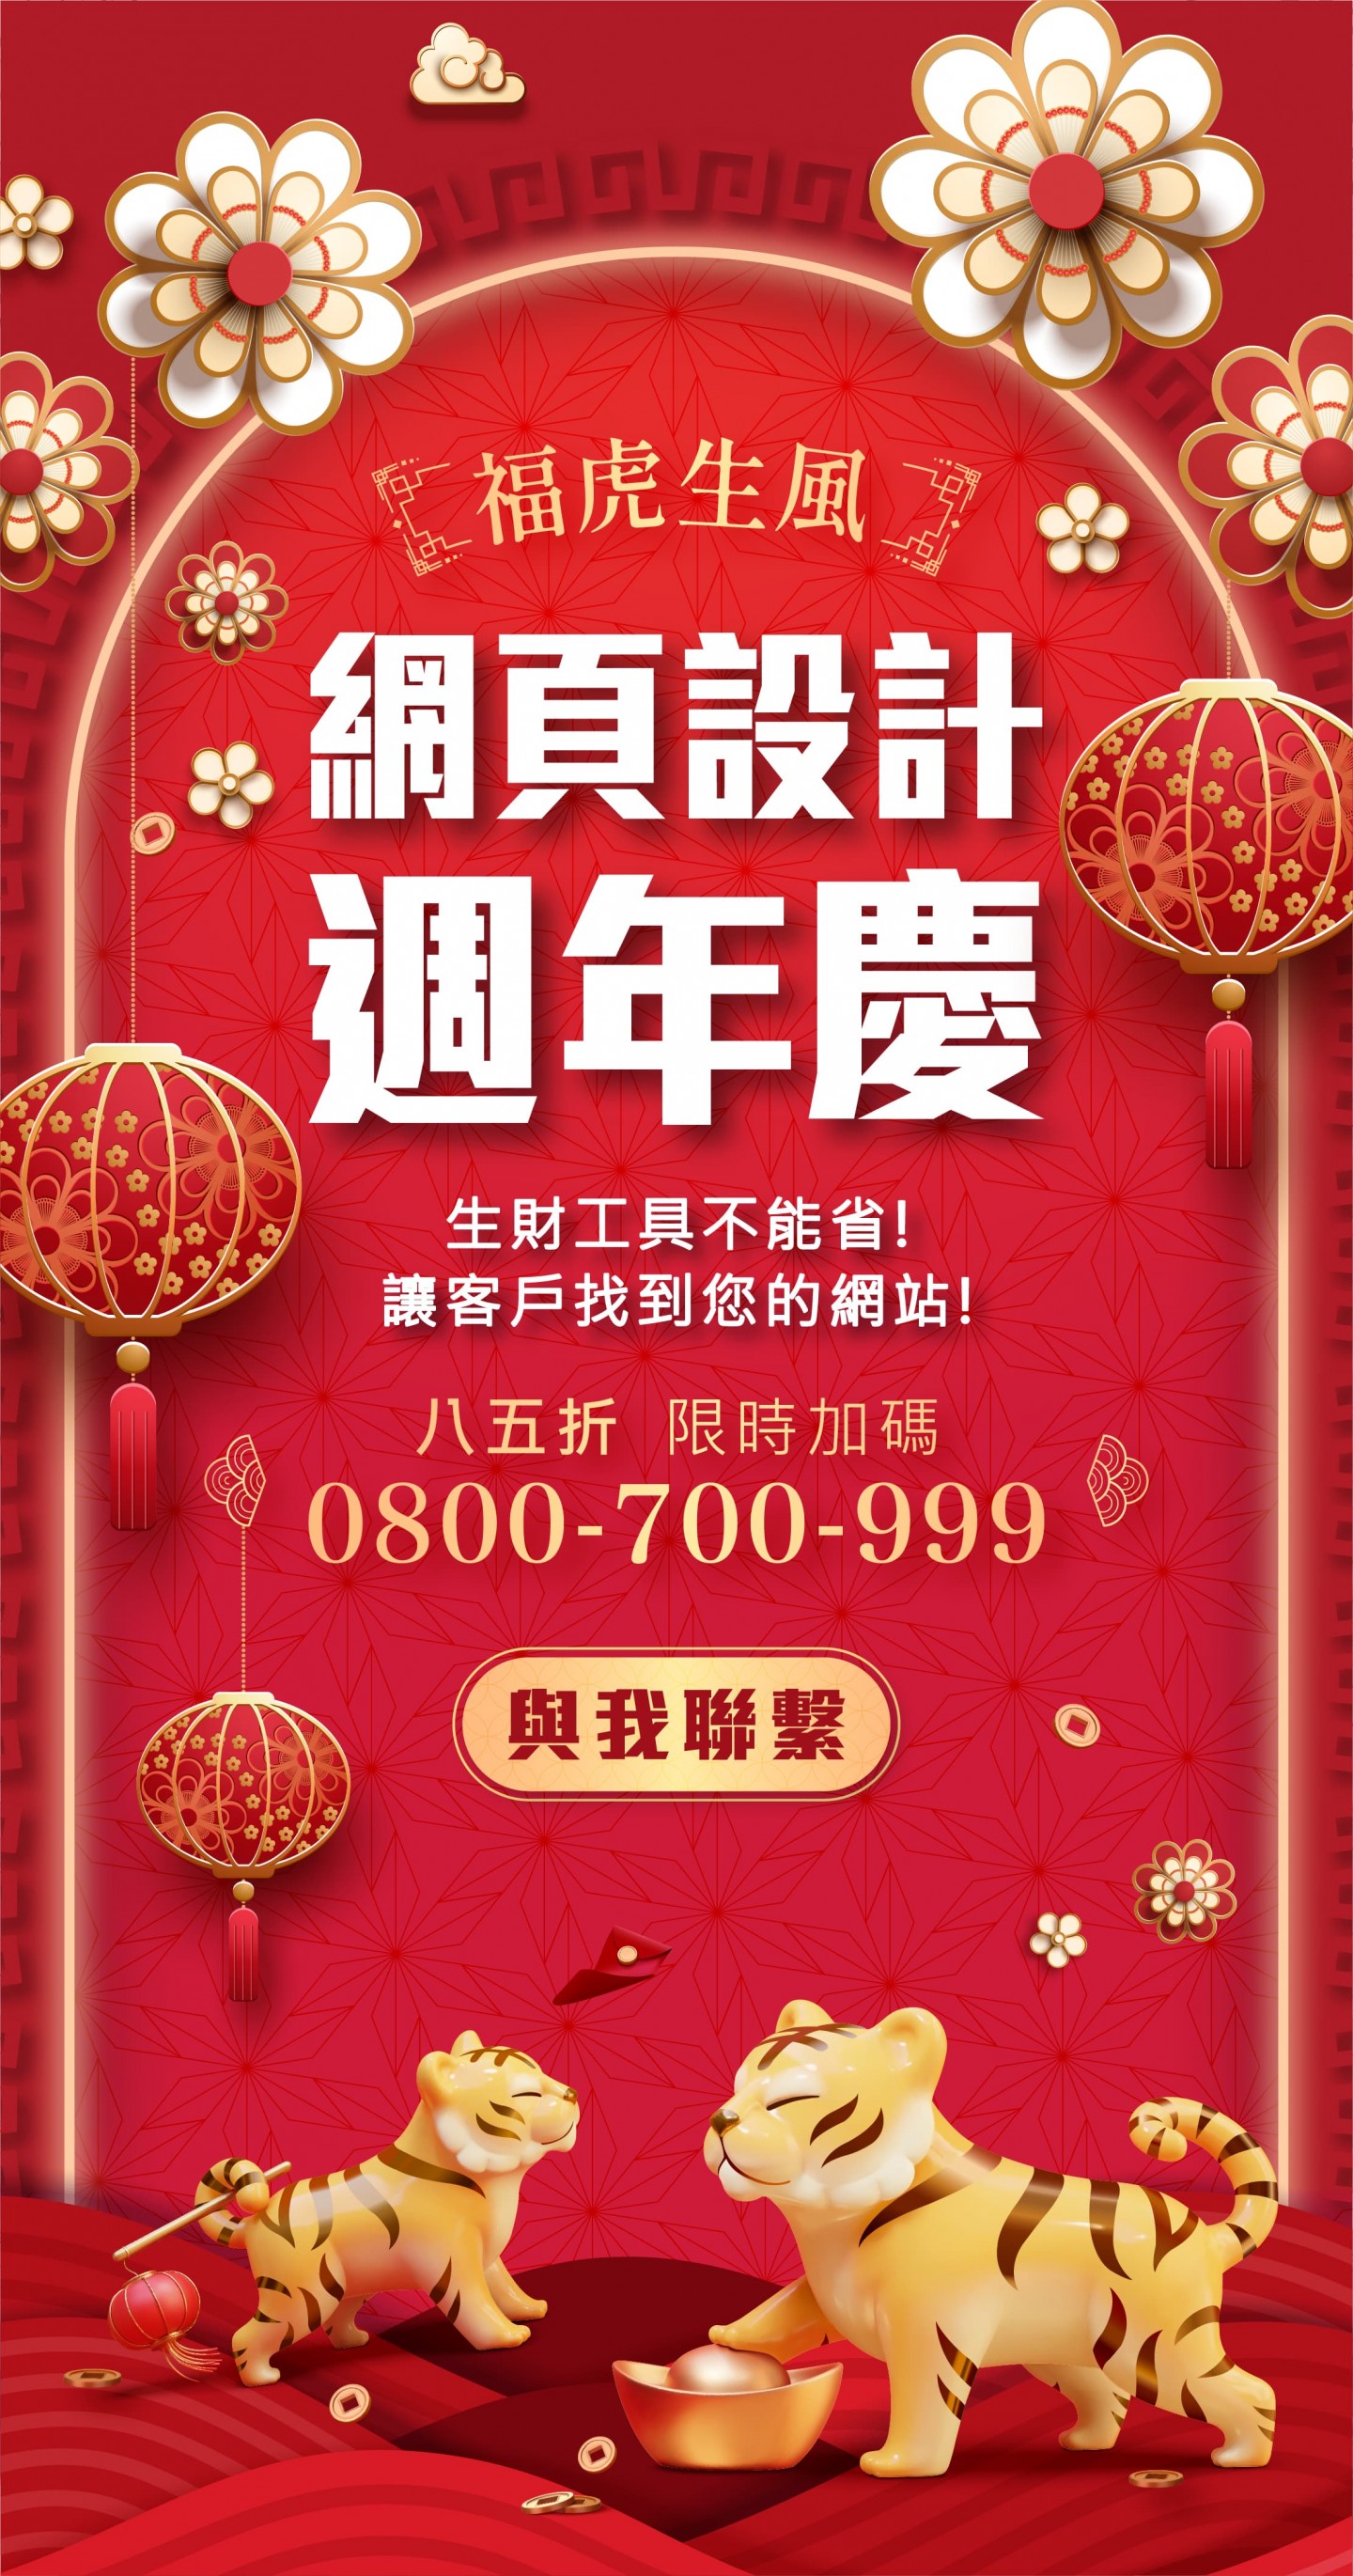 台東網頁設計周年慶